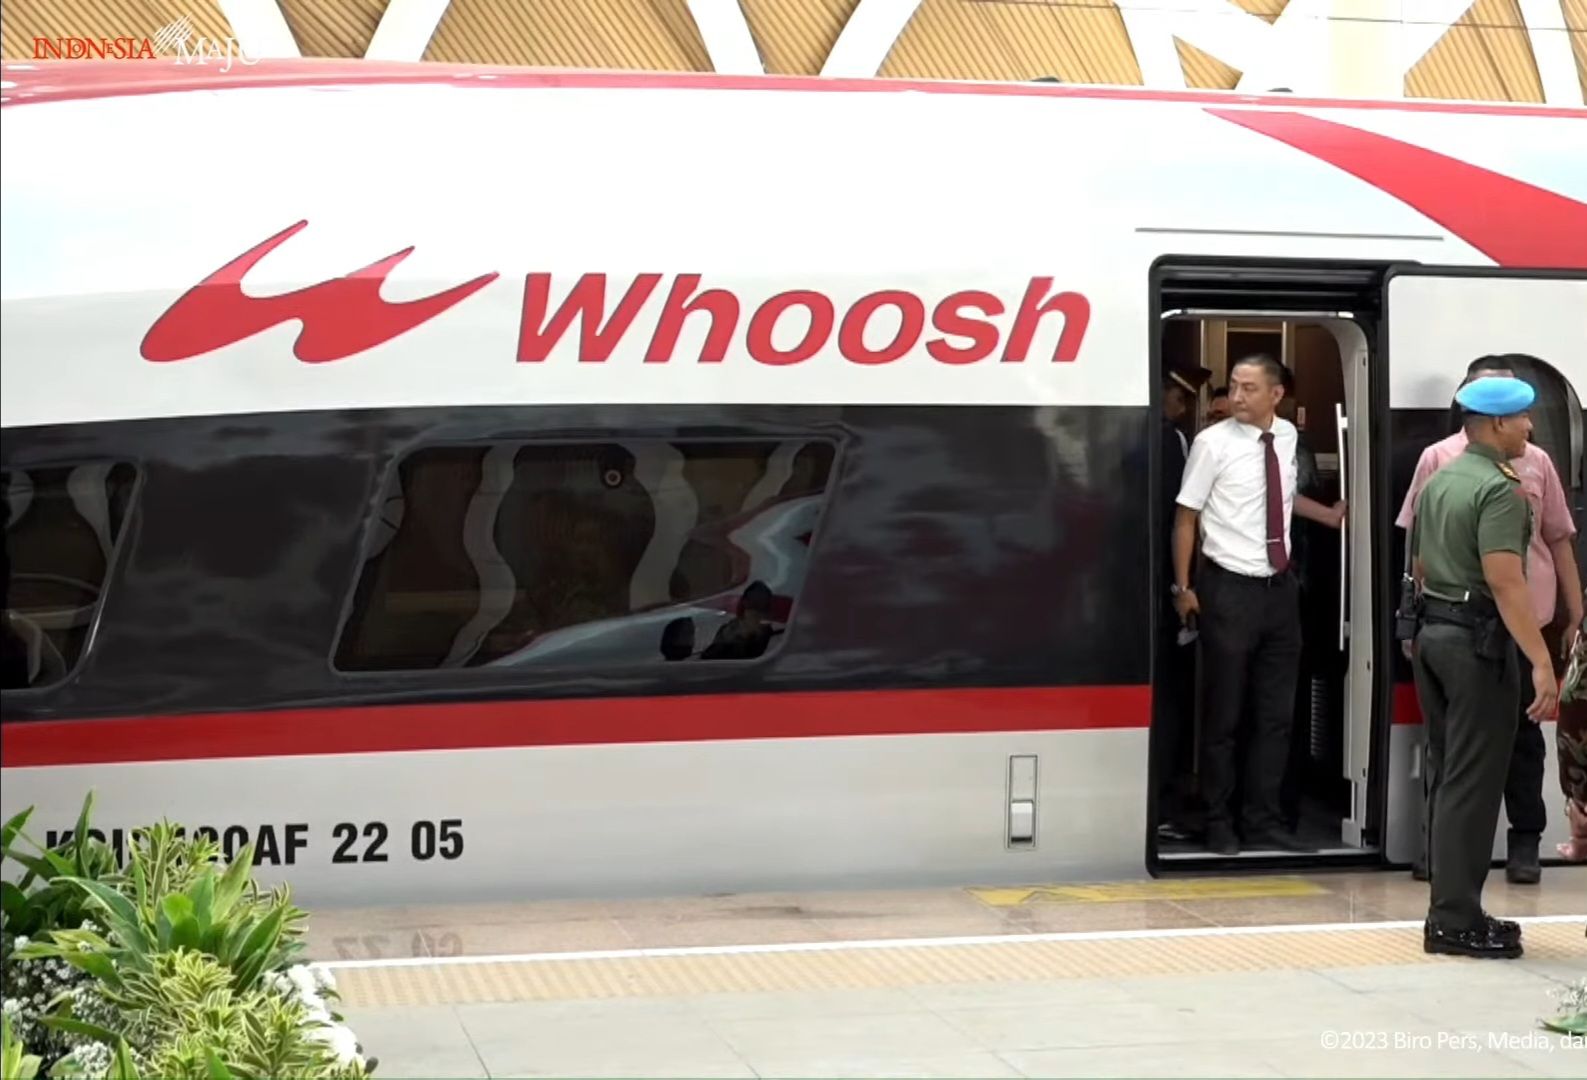 foto: Upacara Peresmian Kereta Cepat Whoosh dan masih Diberikan Tiket Gratis Sampai Oktober 